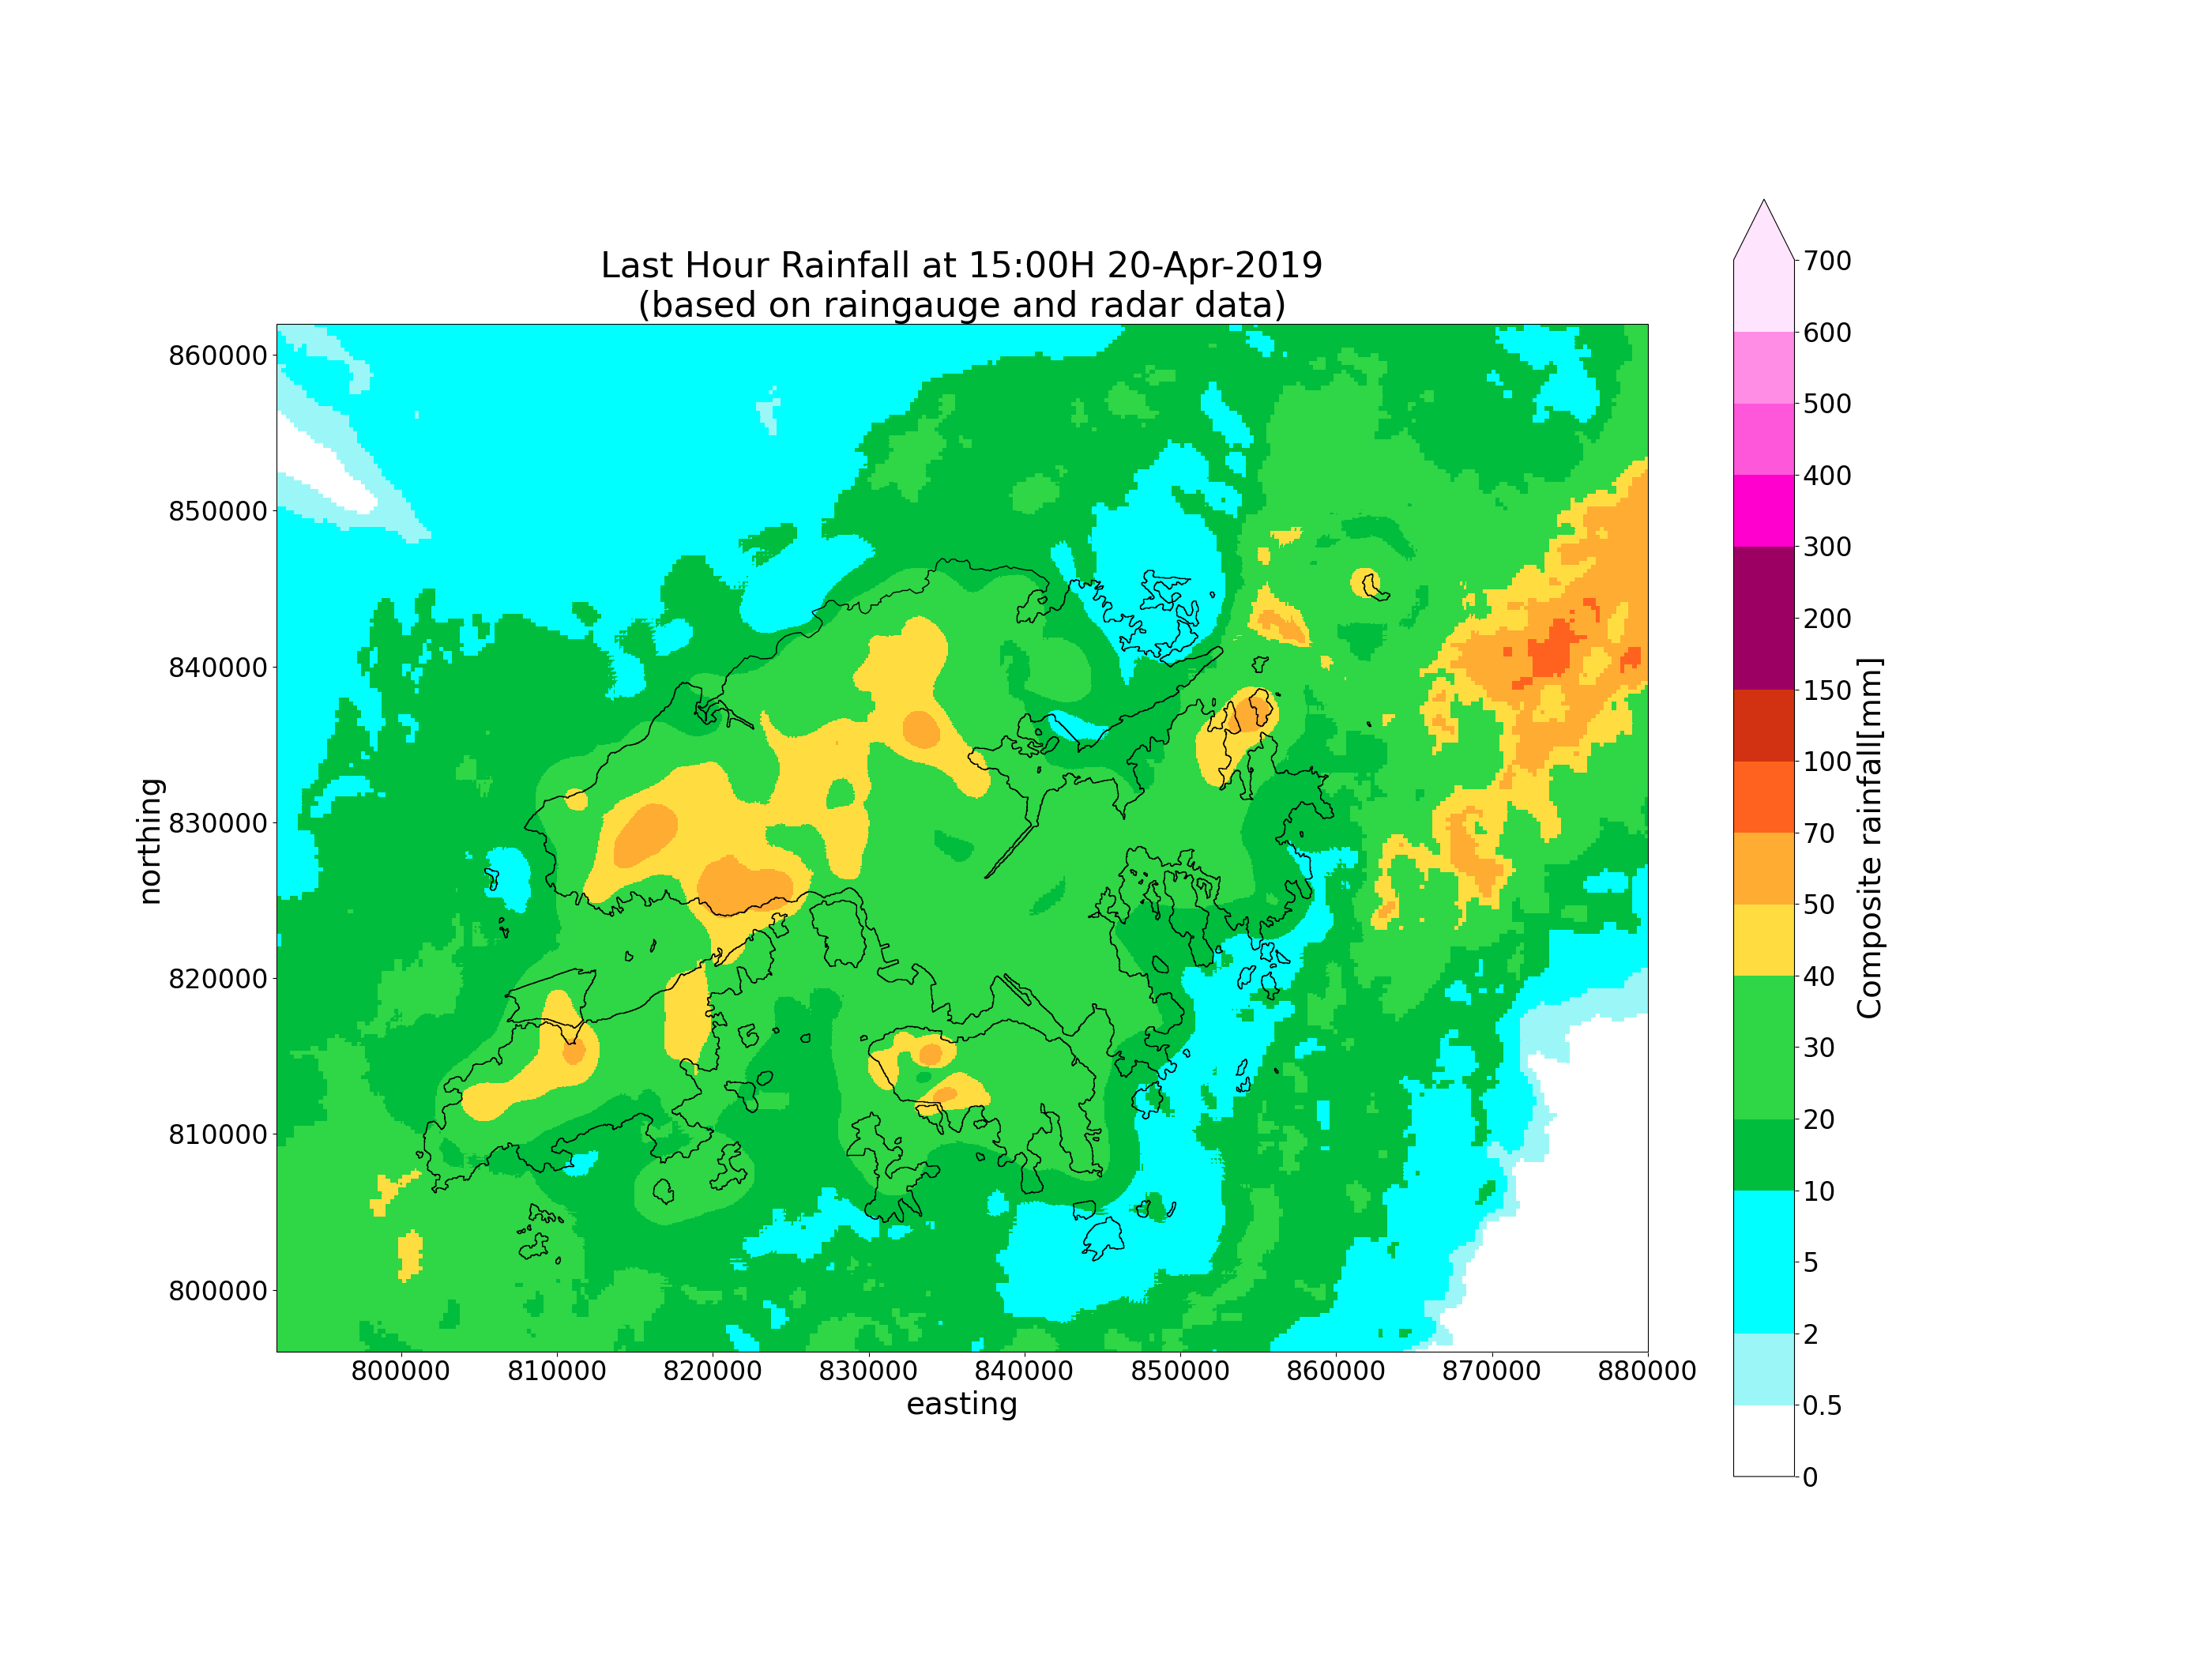 Last Hour Rainfall at 15:00H 20-Apr-2019 (based on raingauge and radar data)